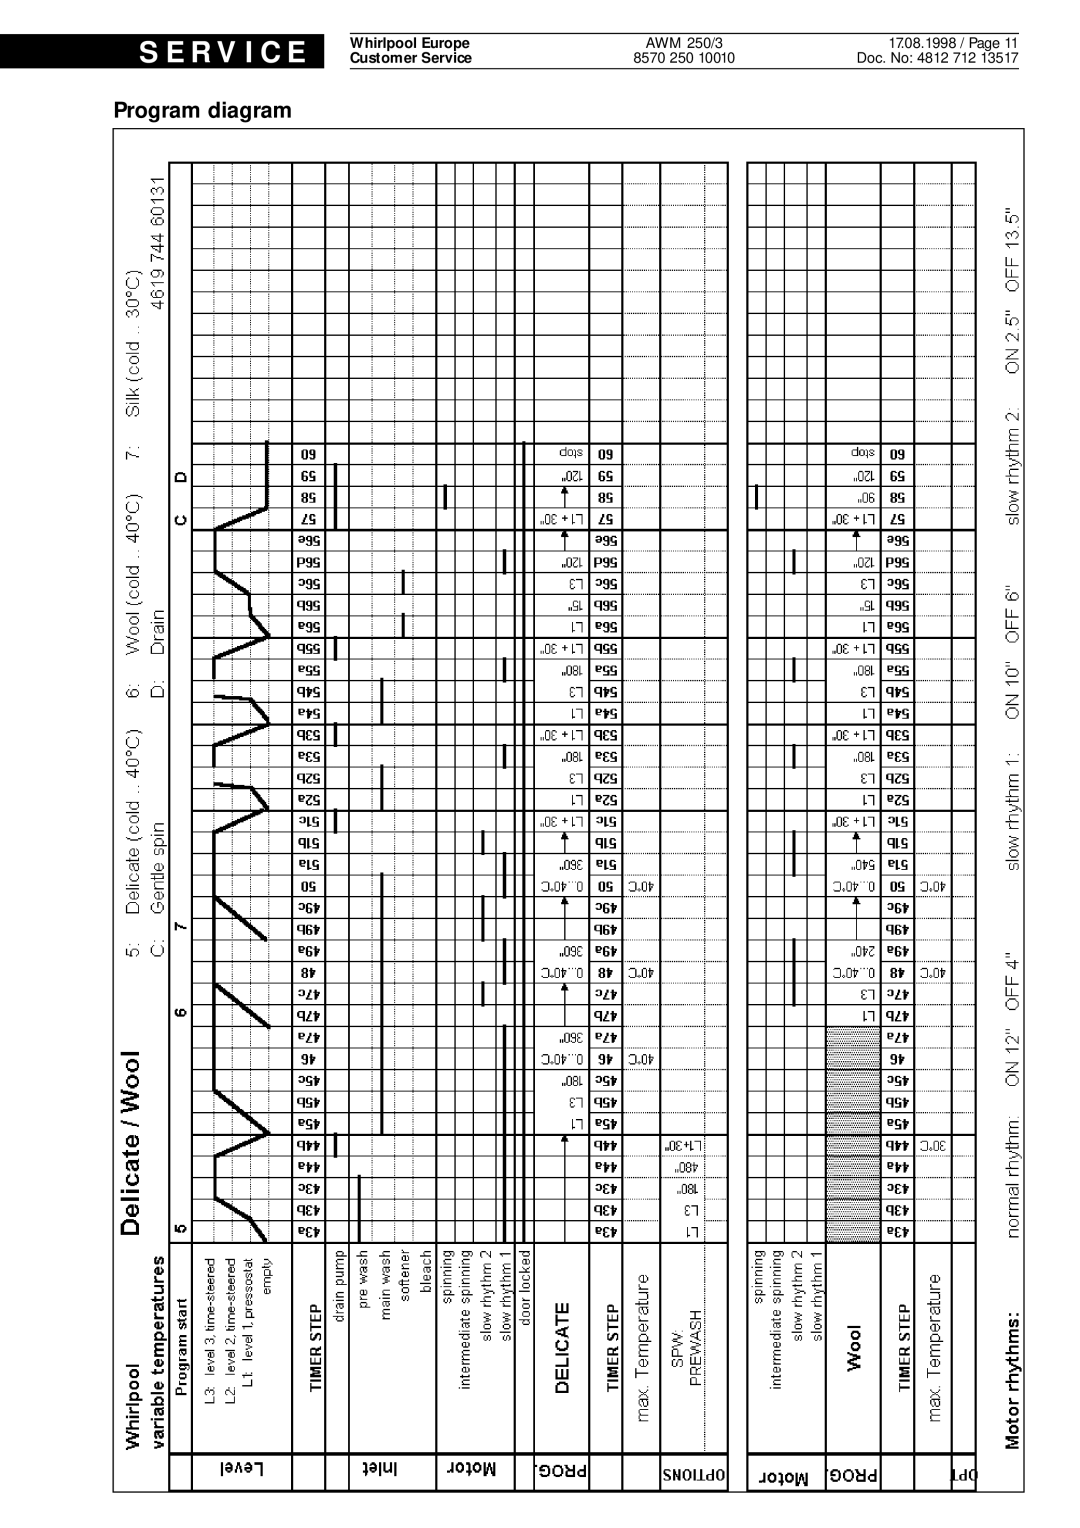 Whirlpool AWM 250 3 service manual S E R V I C E, Program diagram, Doc. No 